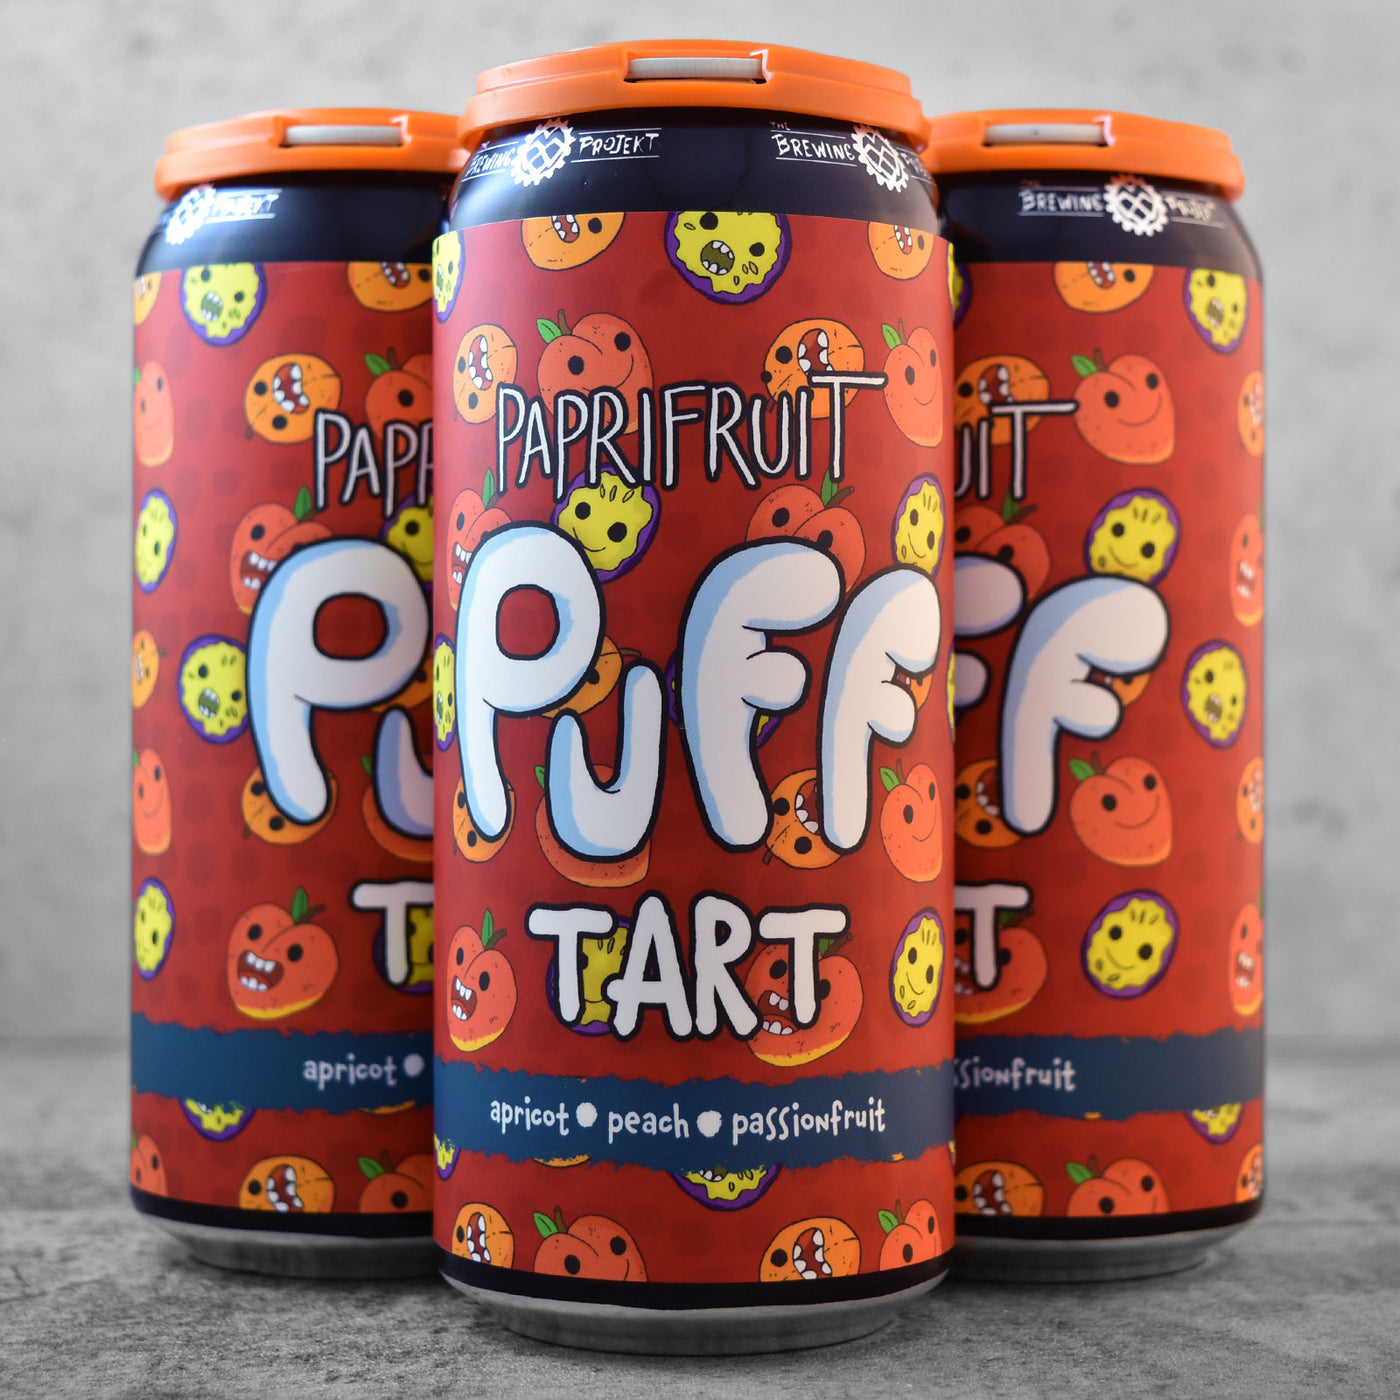 The Brewing Projekt Paprifruit Puff Tart